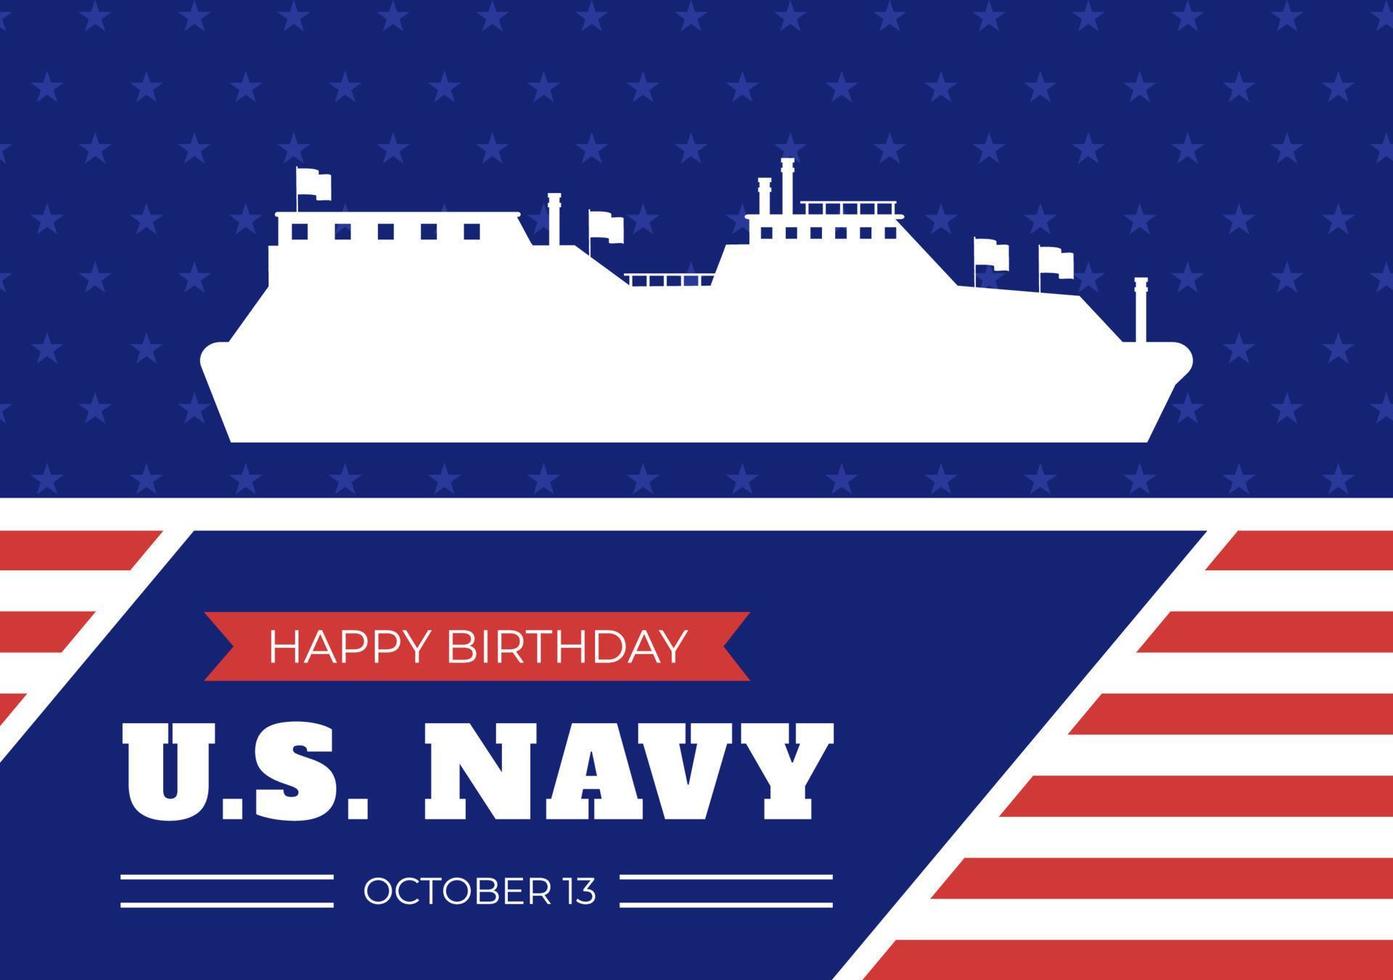 Amerikaanse marine verjaardag op 13 oktober hand getekende cartoon vlakke afbeelding geschikt voor poster, banners en wenskaart in achtergrondstijl vector